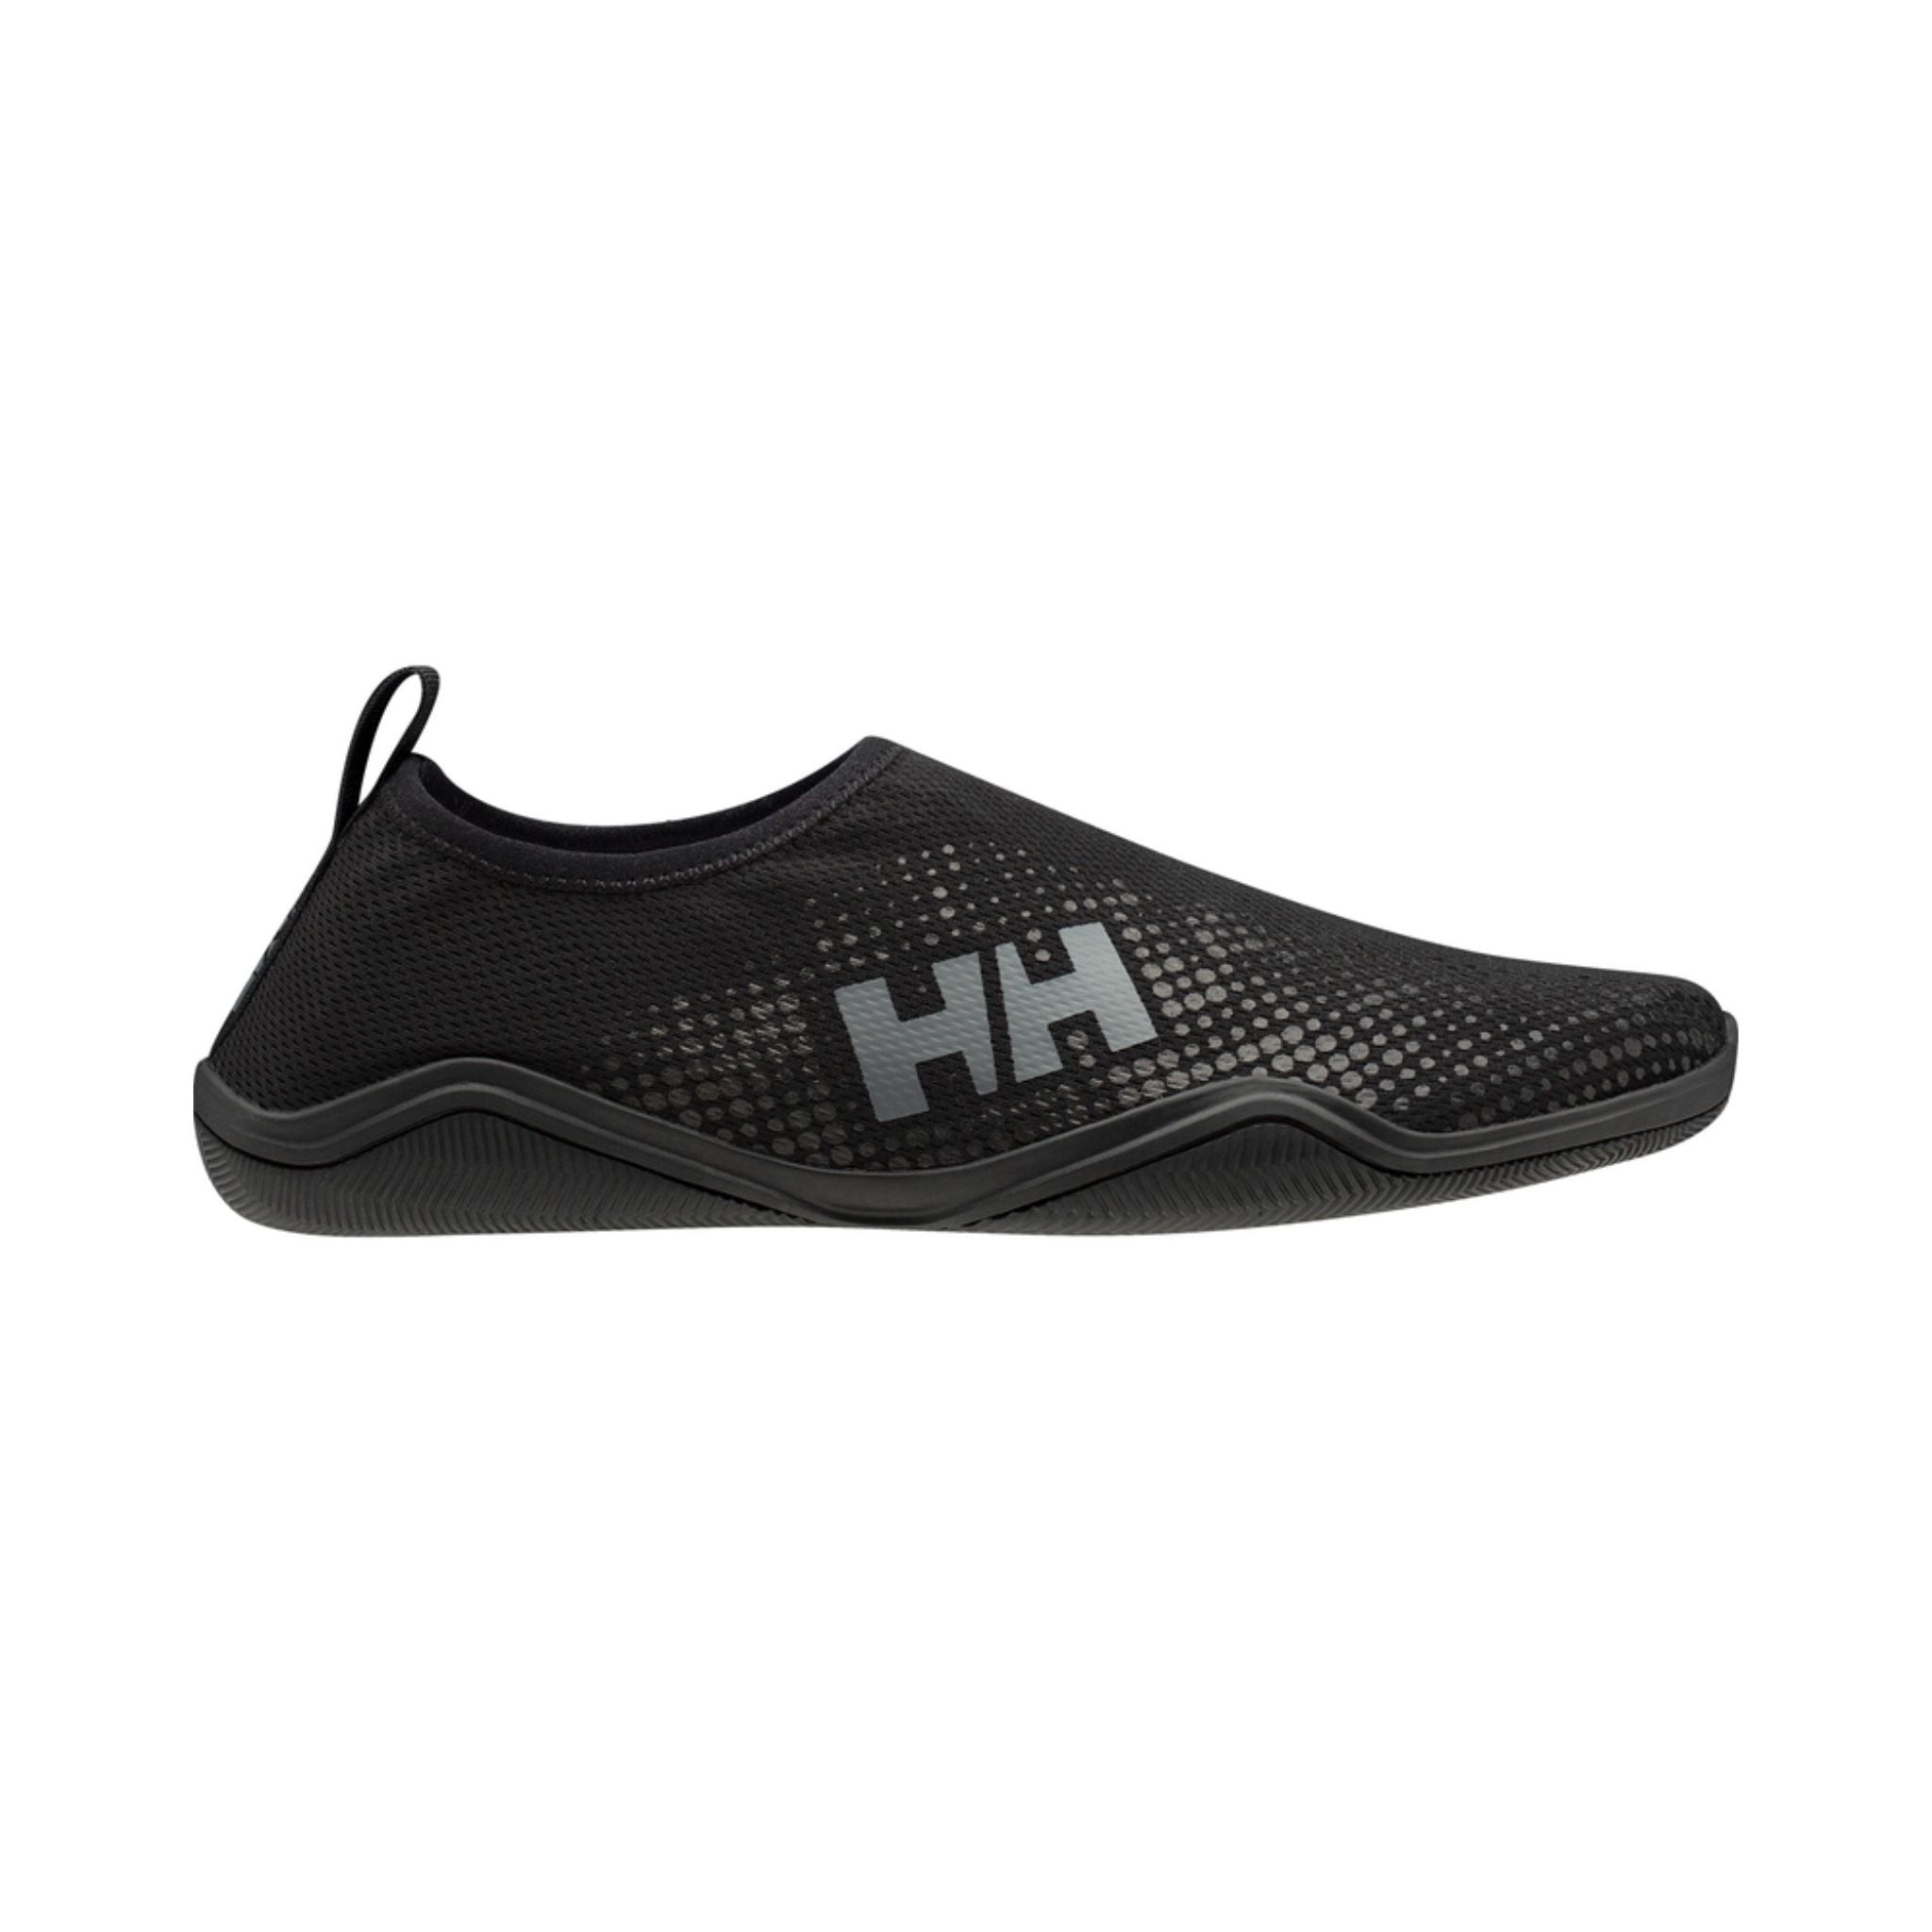 Helly Hansen Women's Crest Watermoc Water Shoe | Helly Hansen | Portwest - The Outdoor Shop